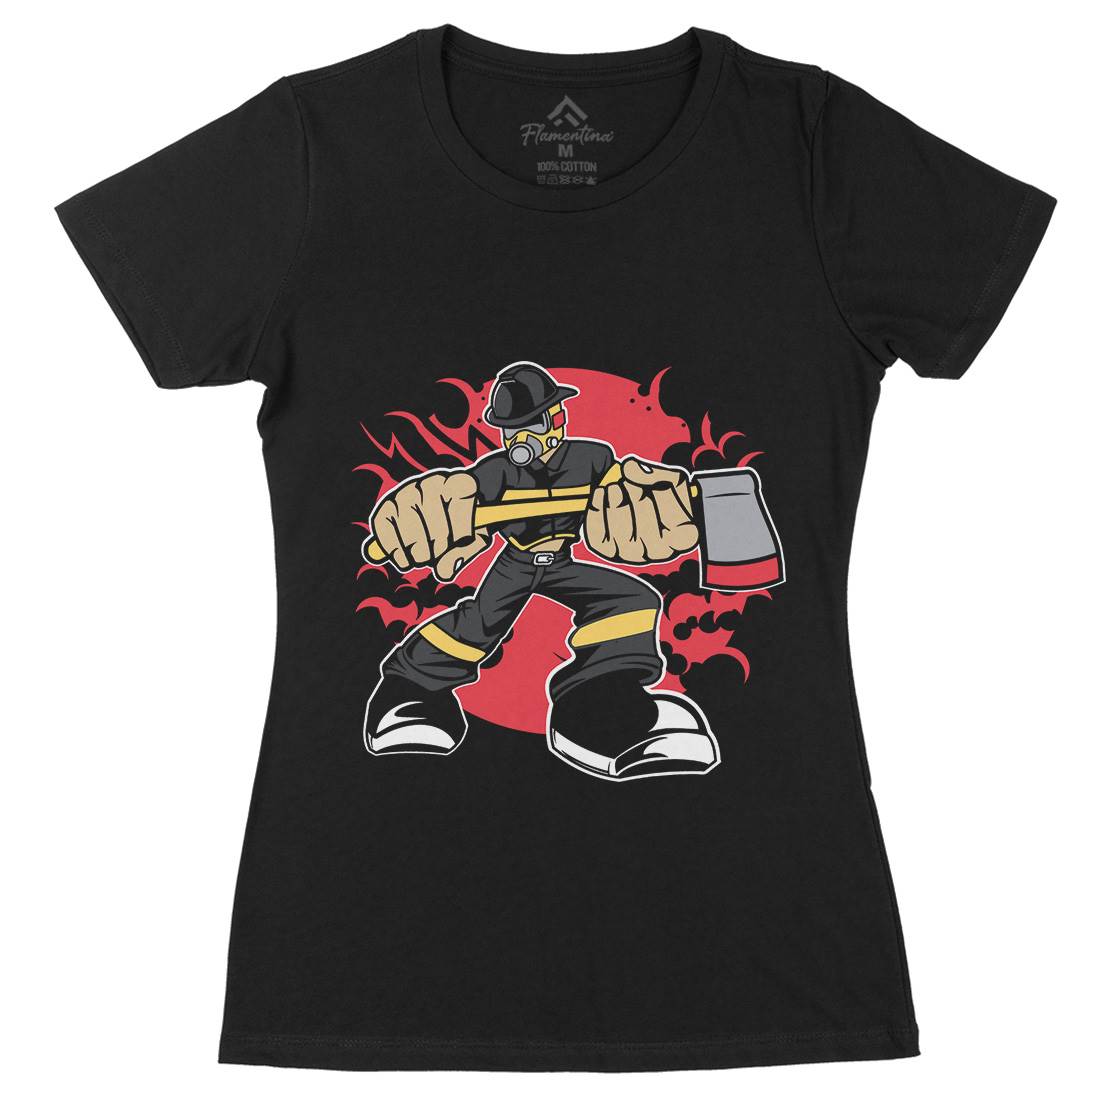 Fireman Womens Organic Crew Neck T-Shirt Firefighters C359